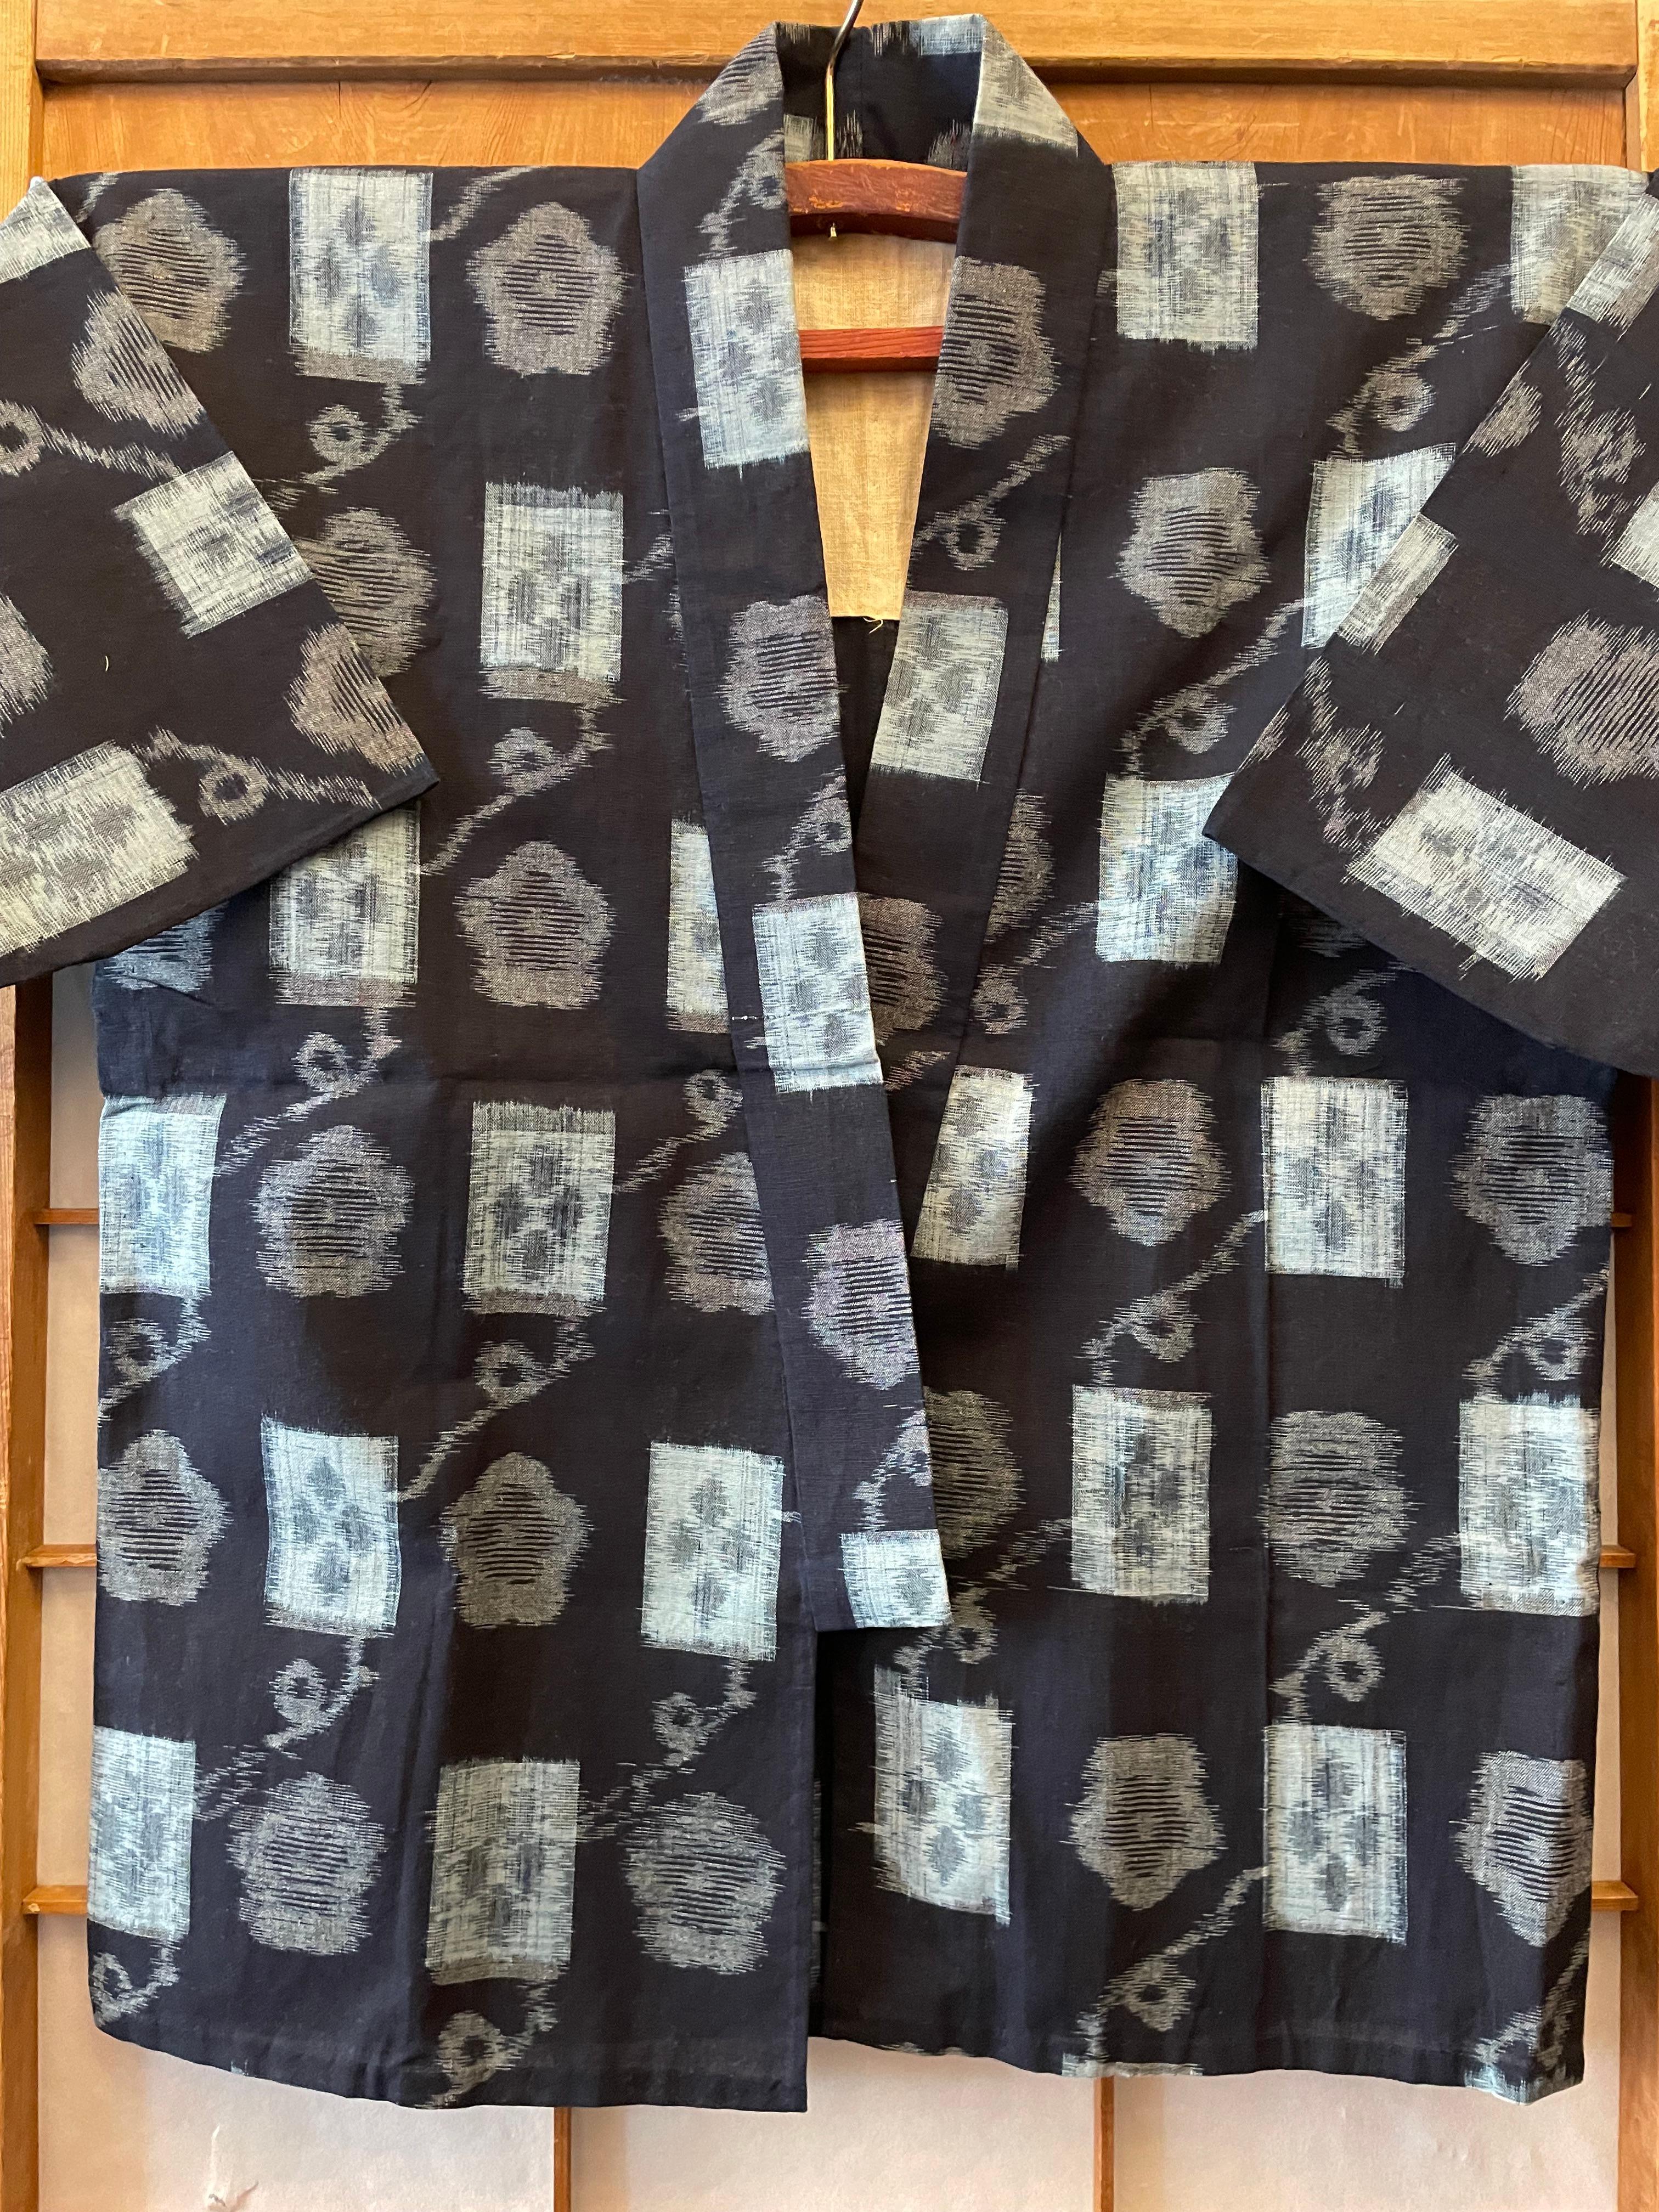 Il s'agit d'une veste fabriquée au Japon, appelée kasuri. Cette veste en kasuri a été fabriquée dans les années 1970.
Certains paysans le portaient pour aller travailler. Il est réalisé en coton Ikat.

Dimensions :
Hauteur du Kasuri 80 cm
Largeur du